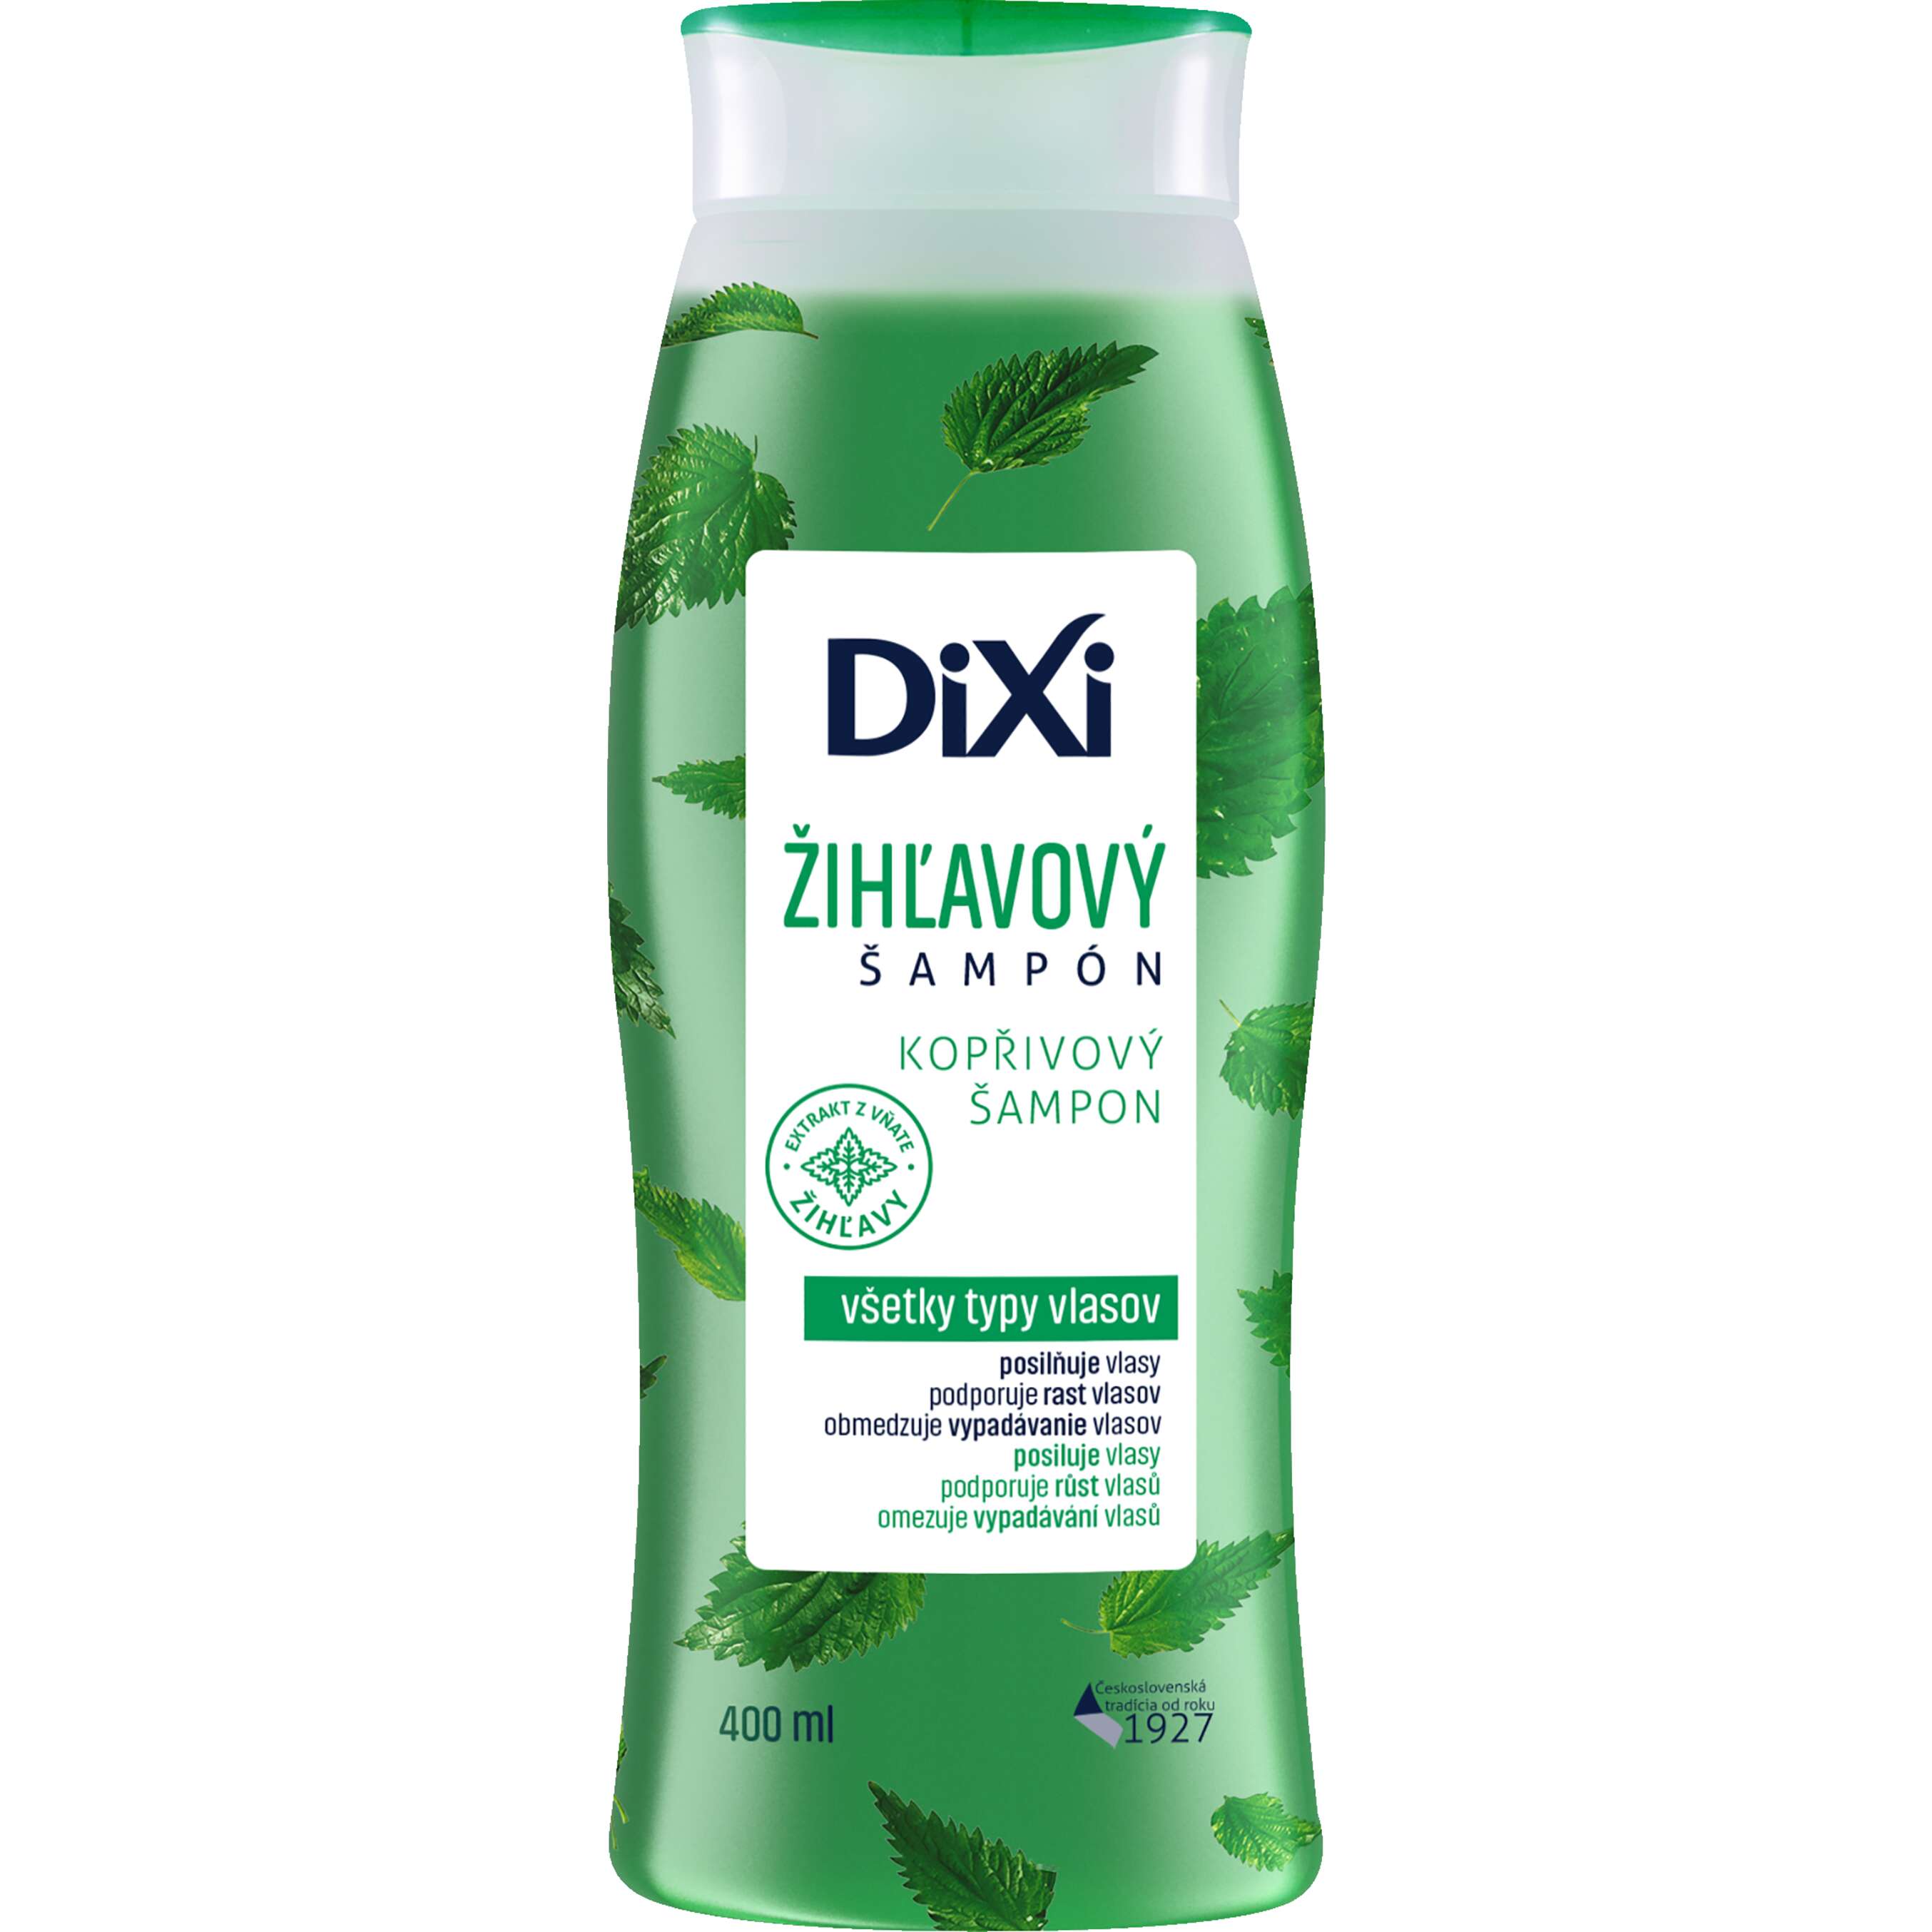 Zobrazit nabídku DIXI kopřivový šampón